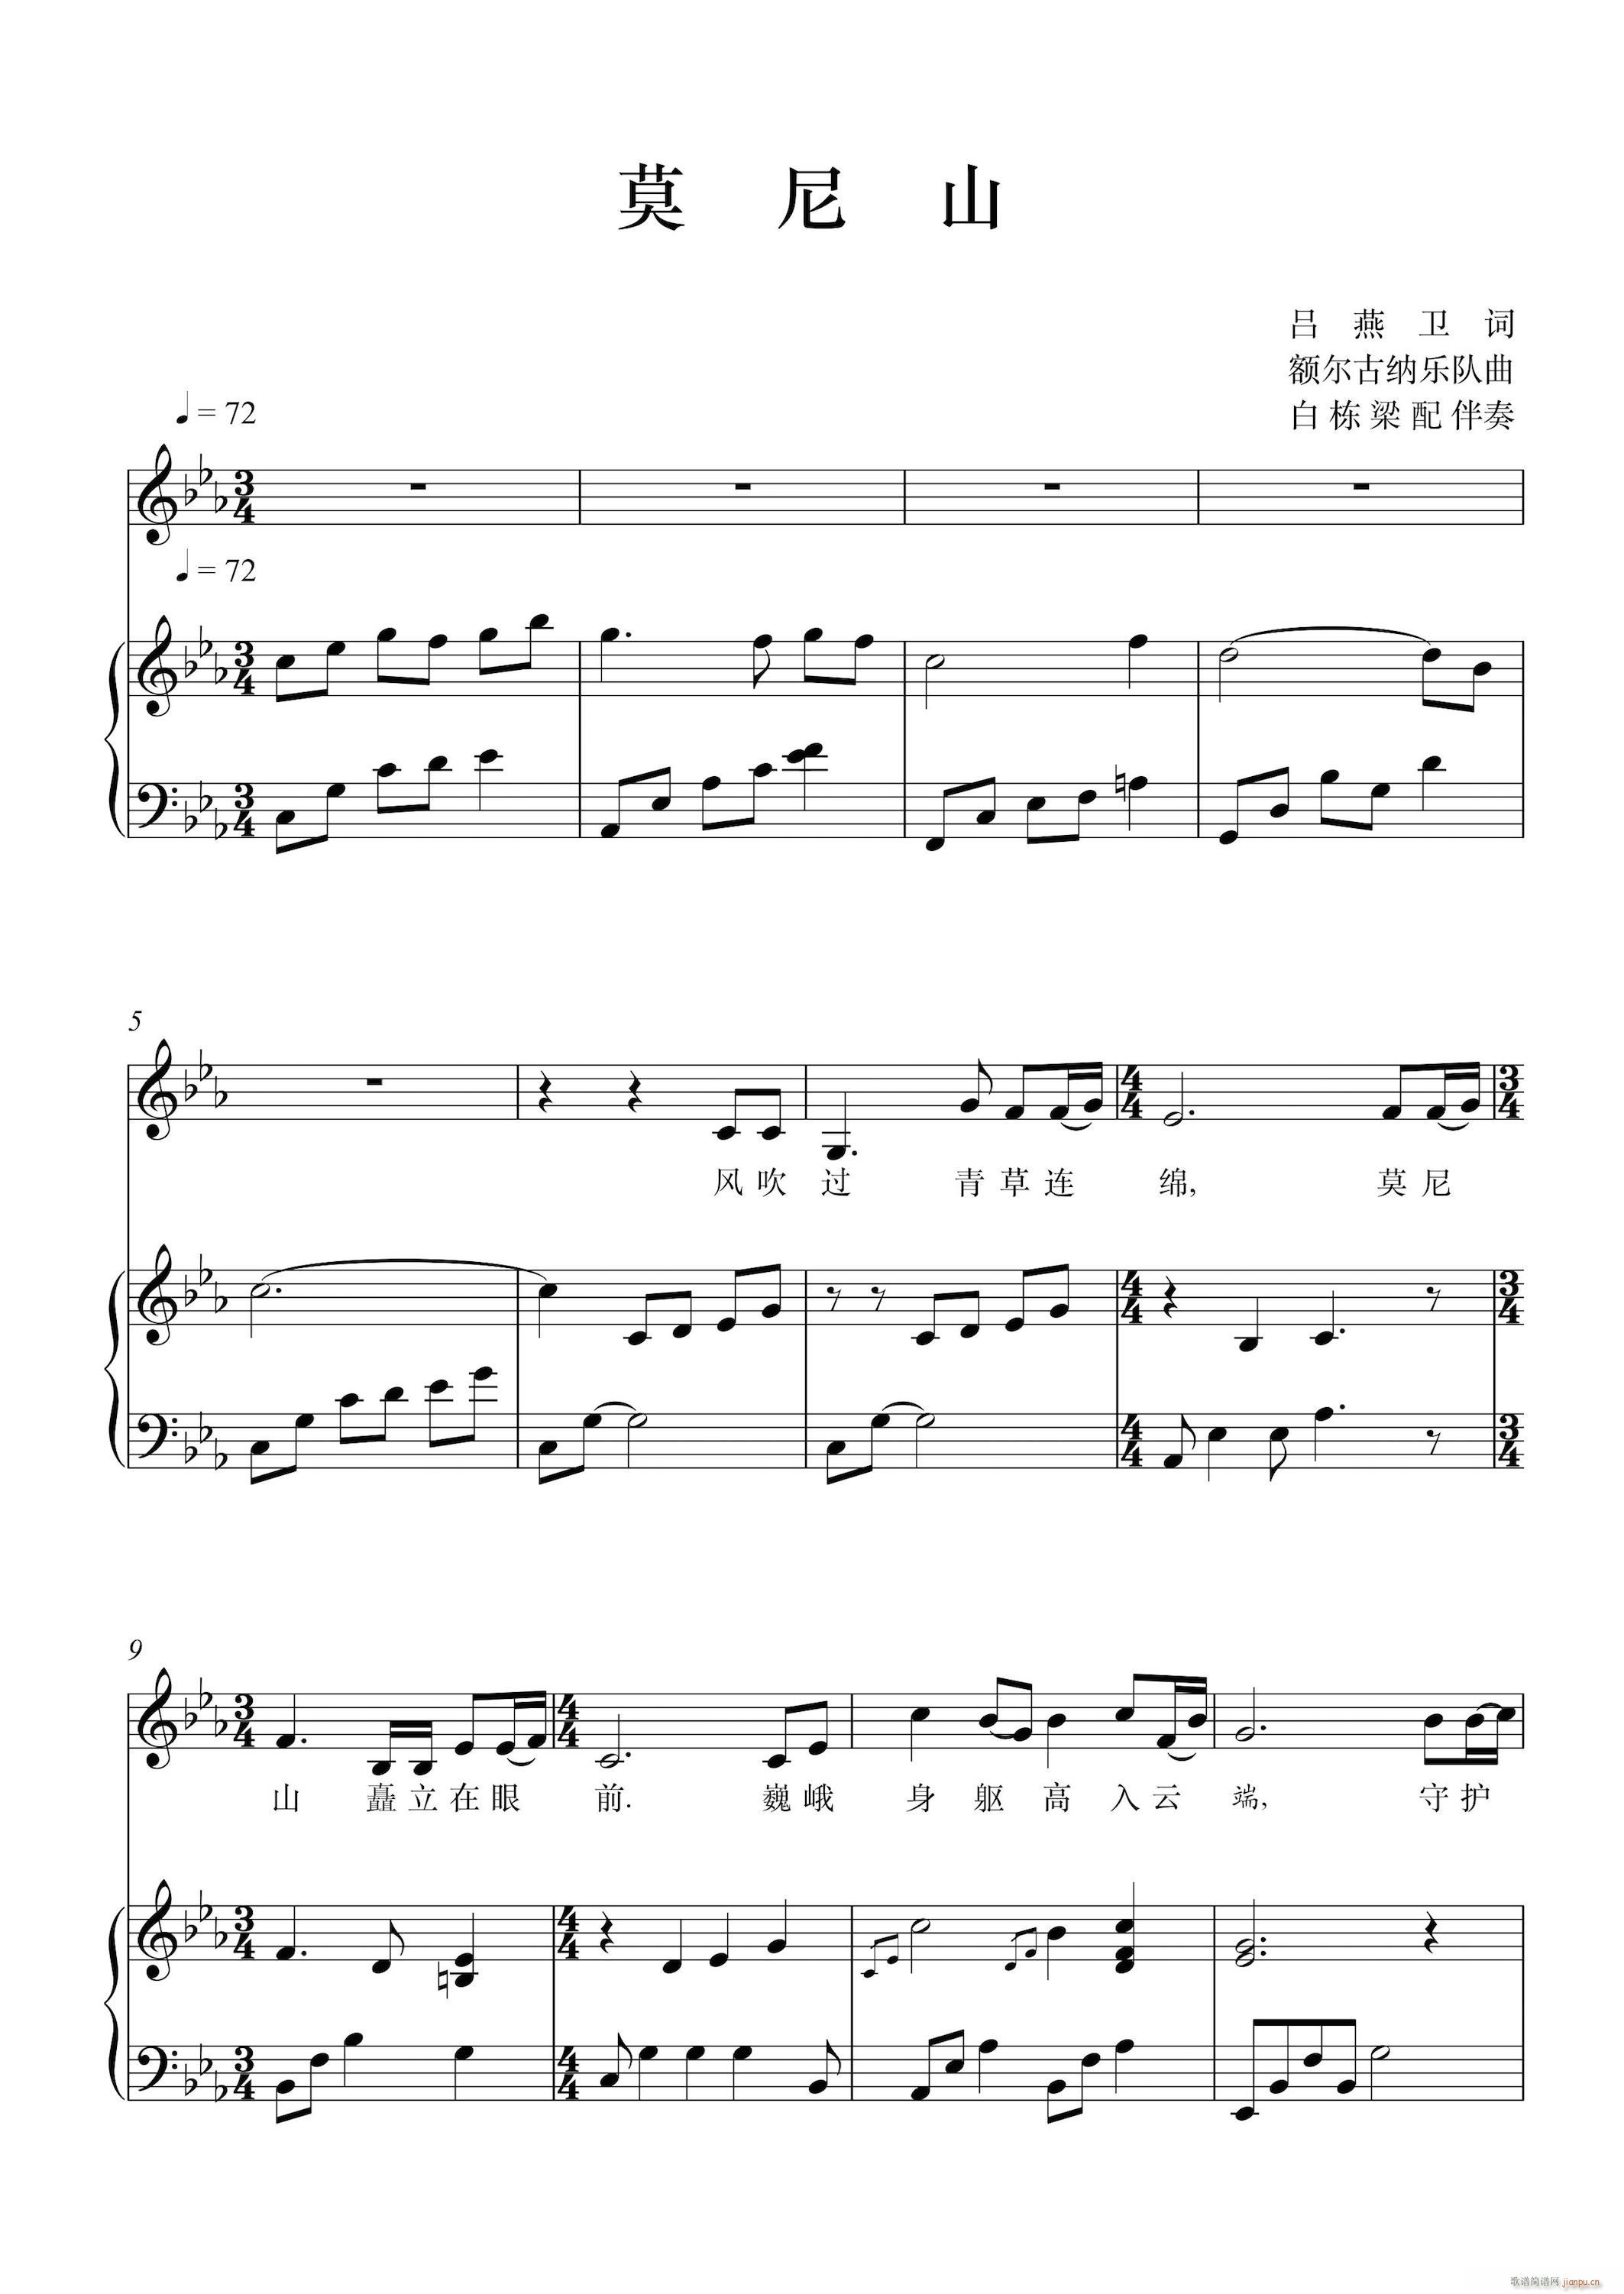 莫尼山 钢琴伴奏谱(钢琴谱)1